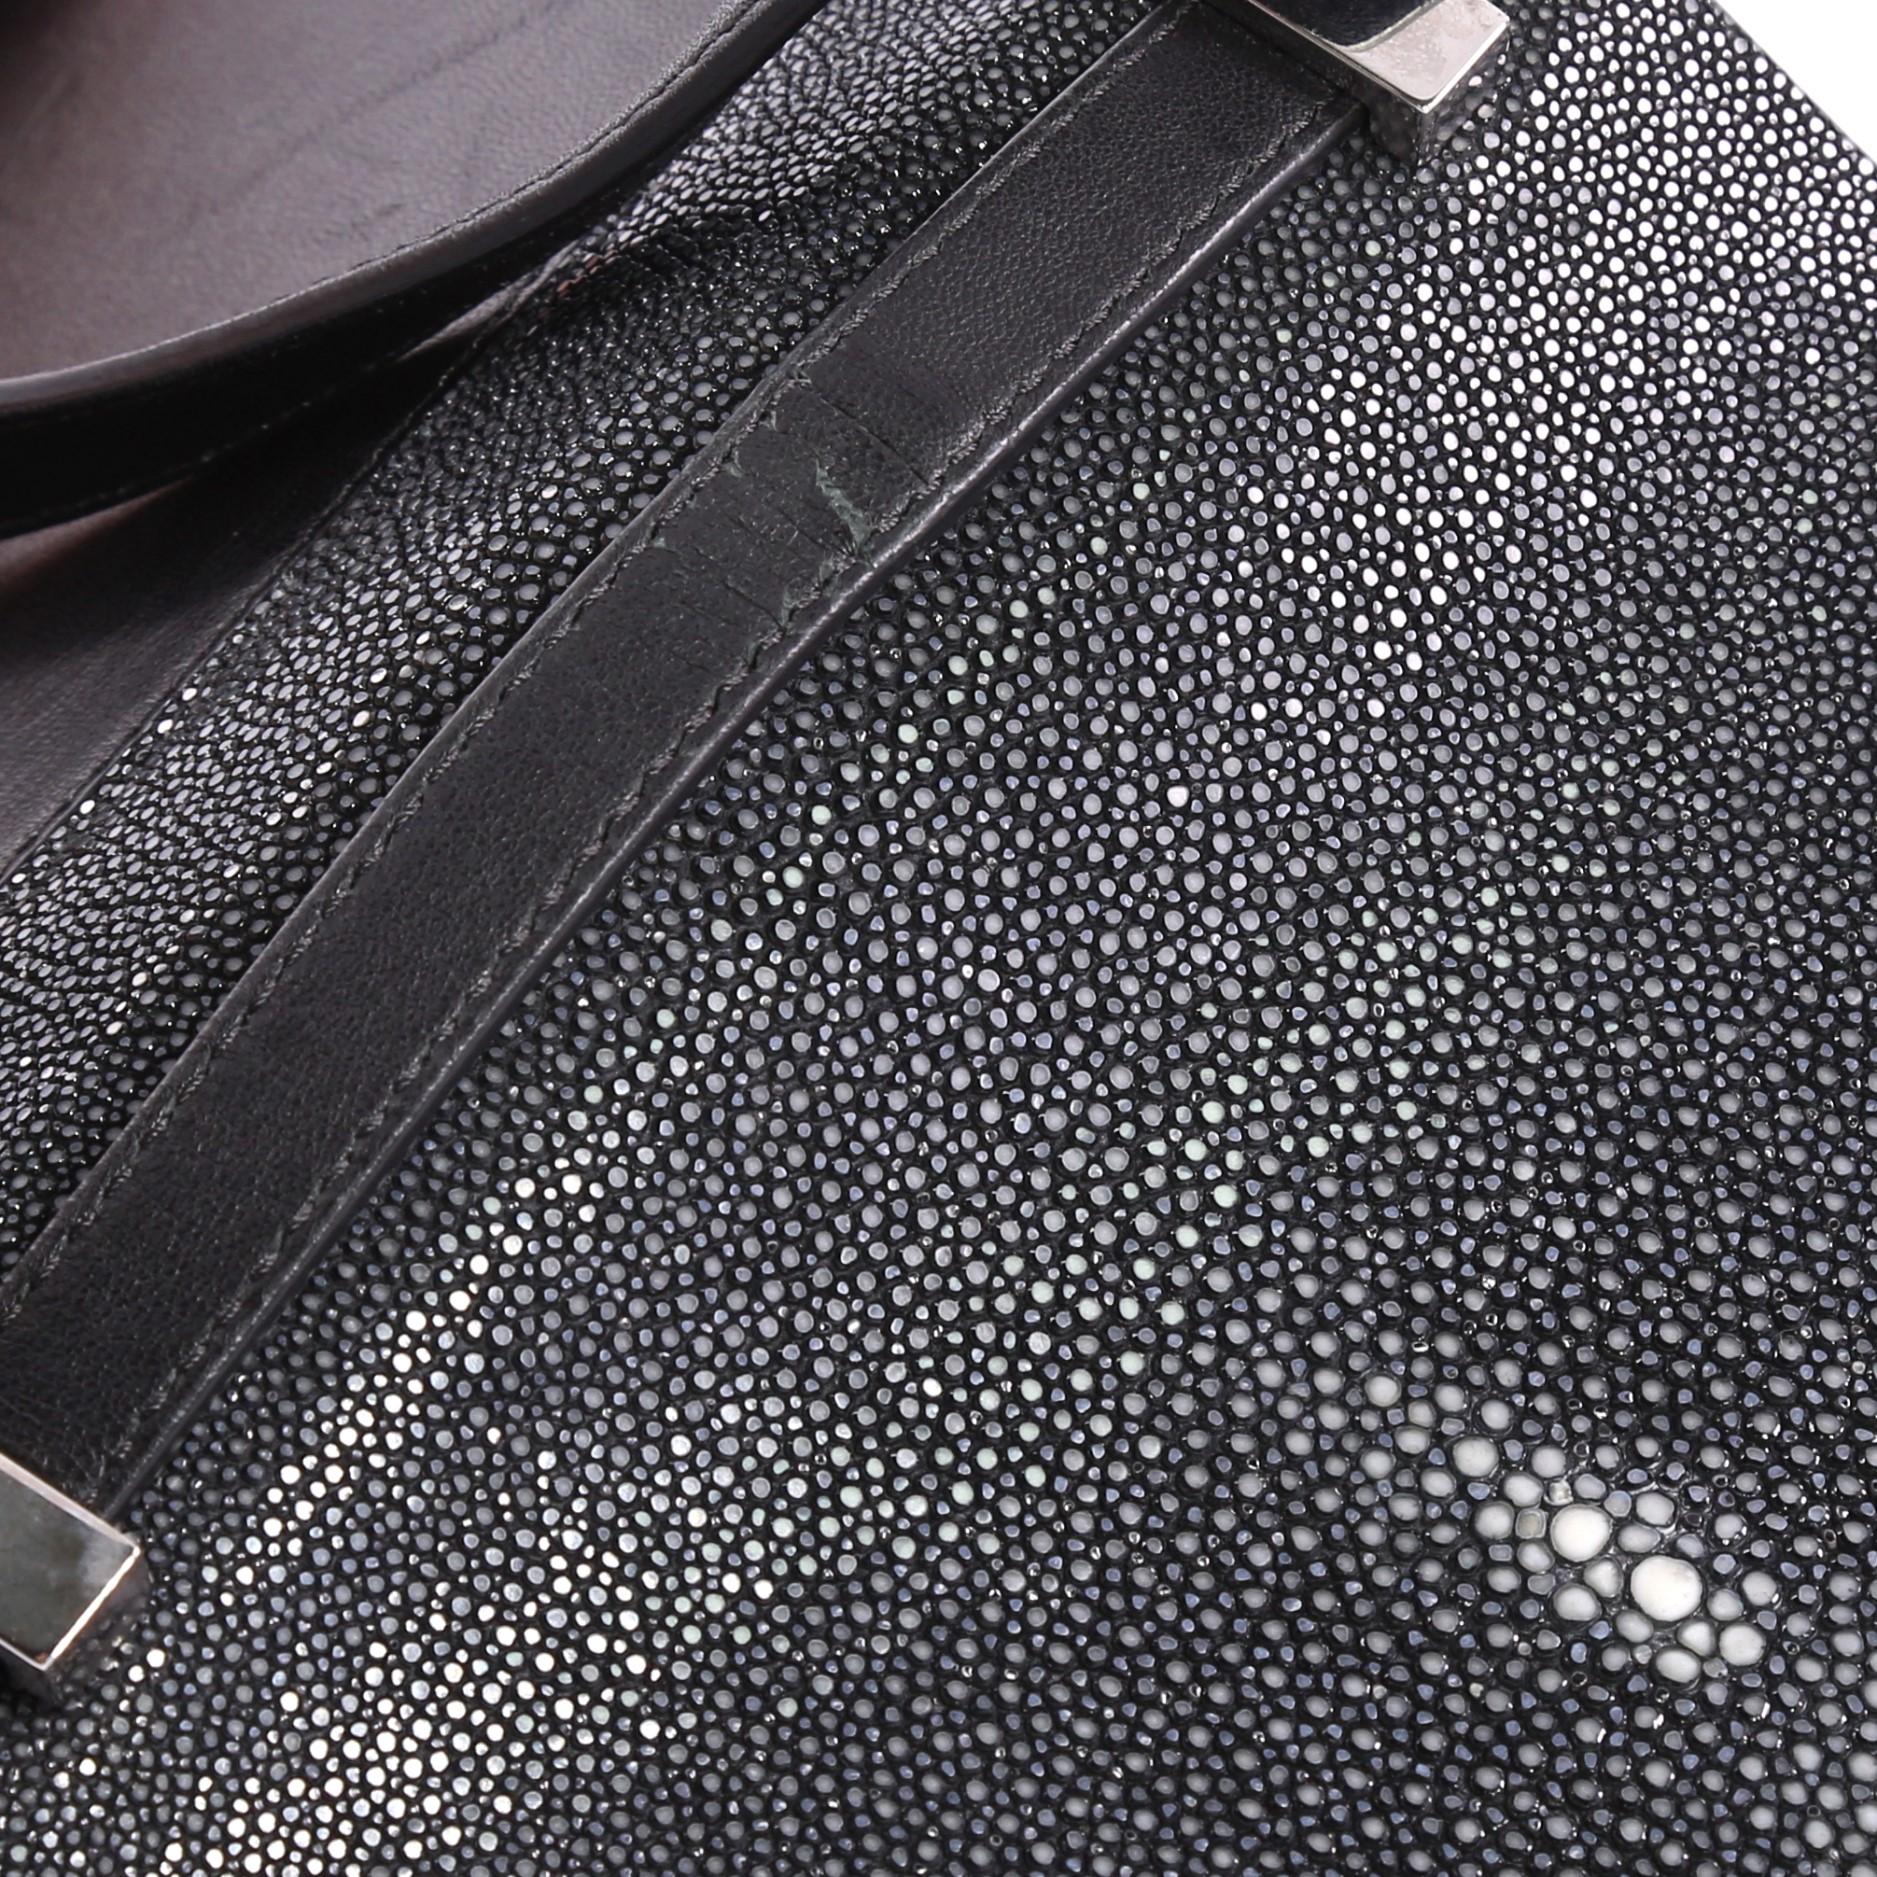 Givenchy Chain Pandora Box Handbag Stingray Mini 3